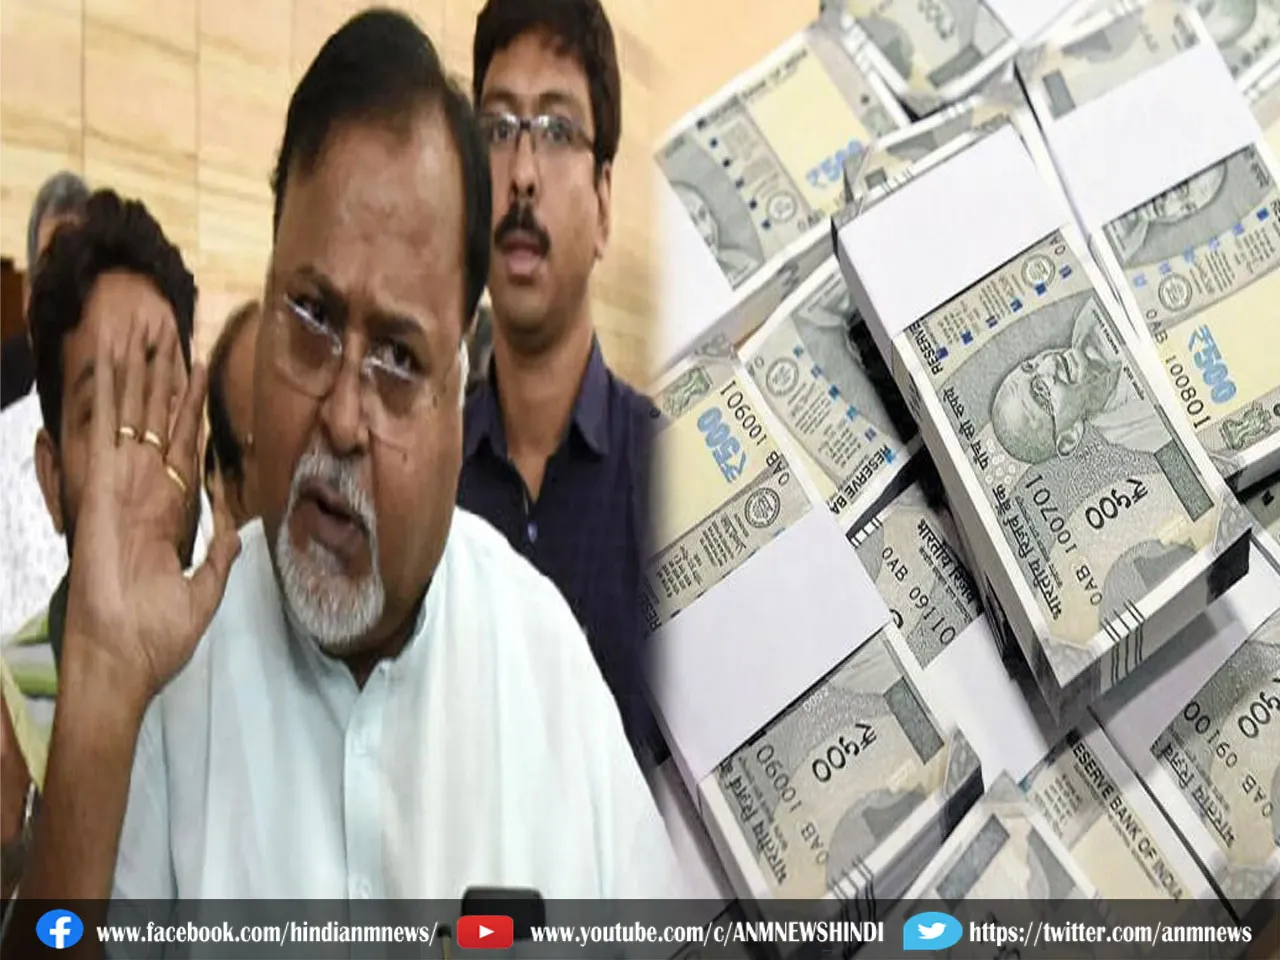 West Bengal News : पार्थ चटर्जी के बैंक अकाउंट में किए जा सकते हैं 15 लाख ट्रांसफर